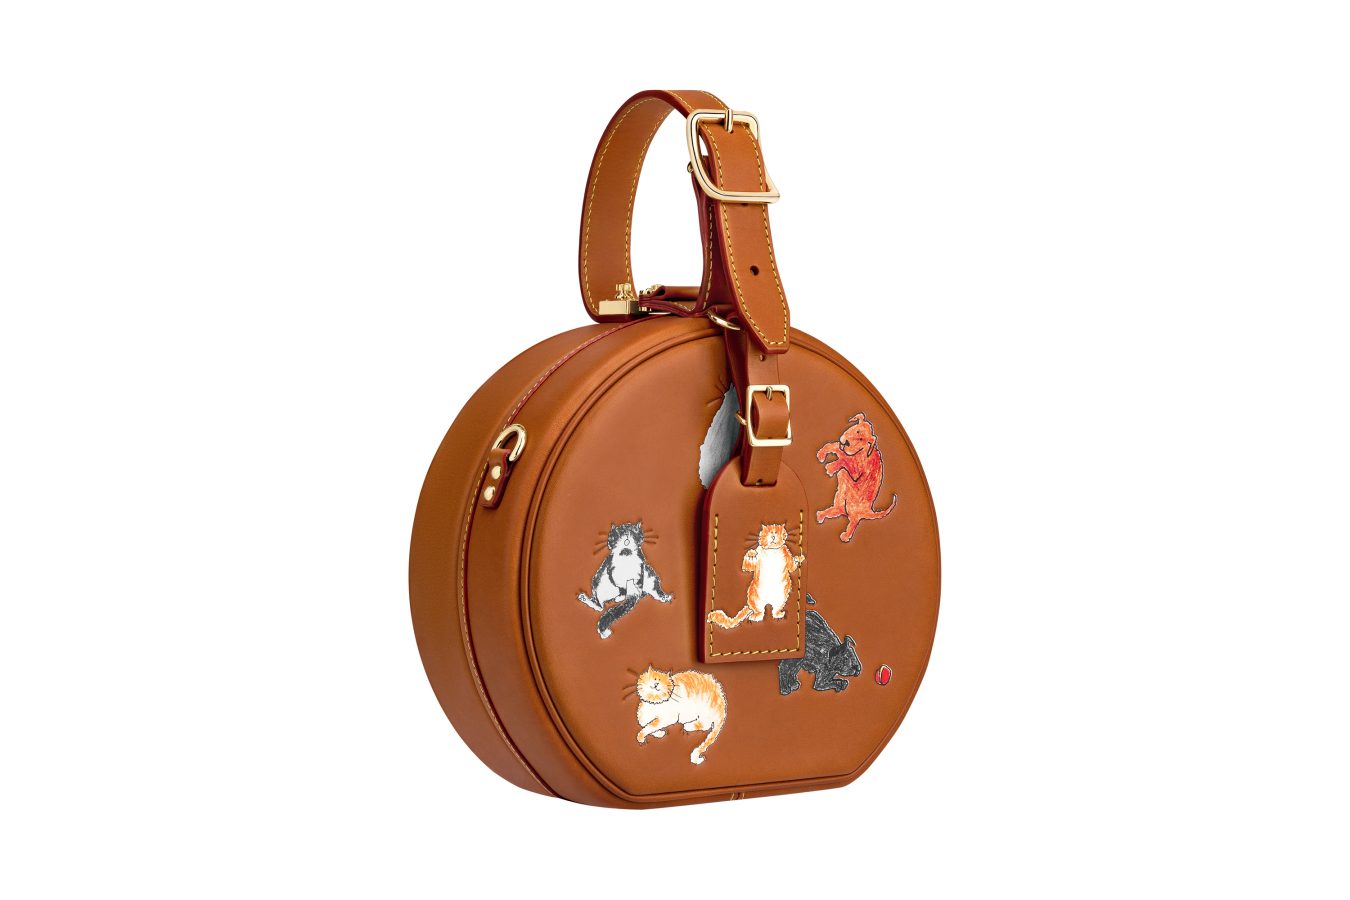 Louis Vuitton Paname Bag Limited Edition Grace Coddington Catogram